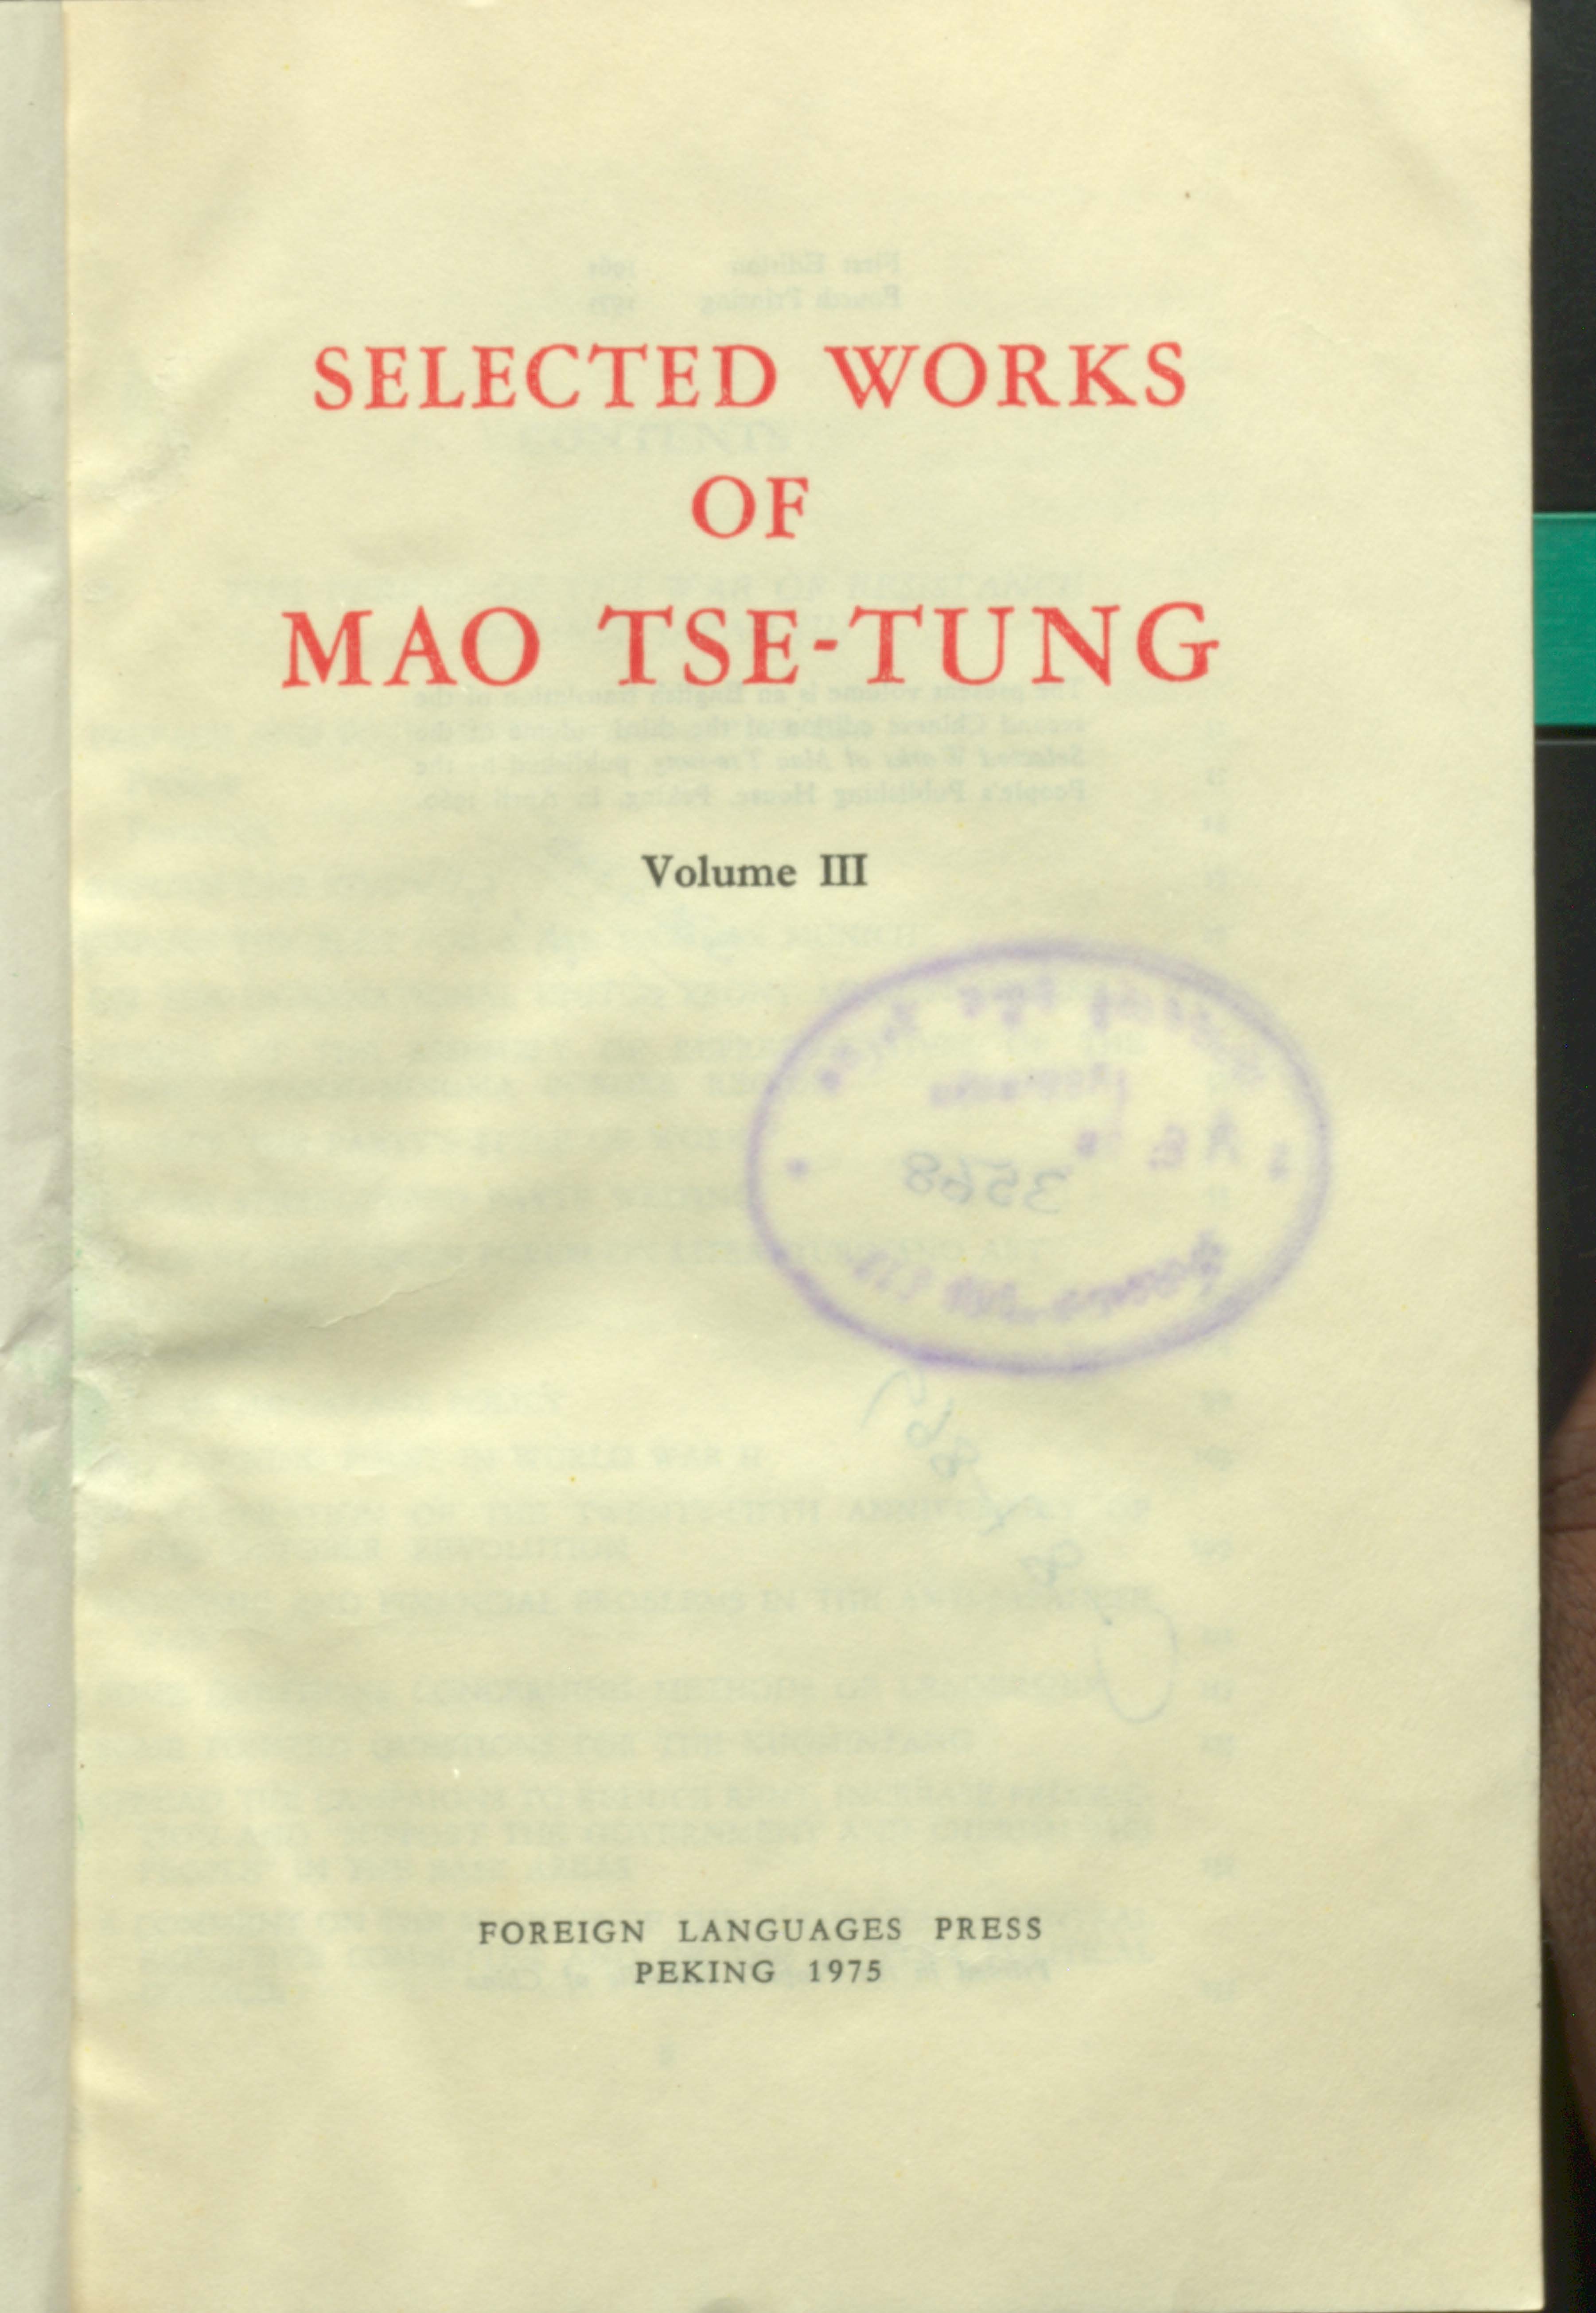 Selected works of man tse-tung (vol-3)